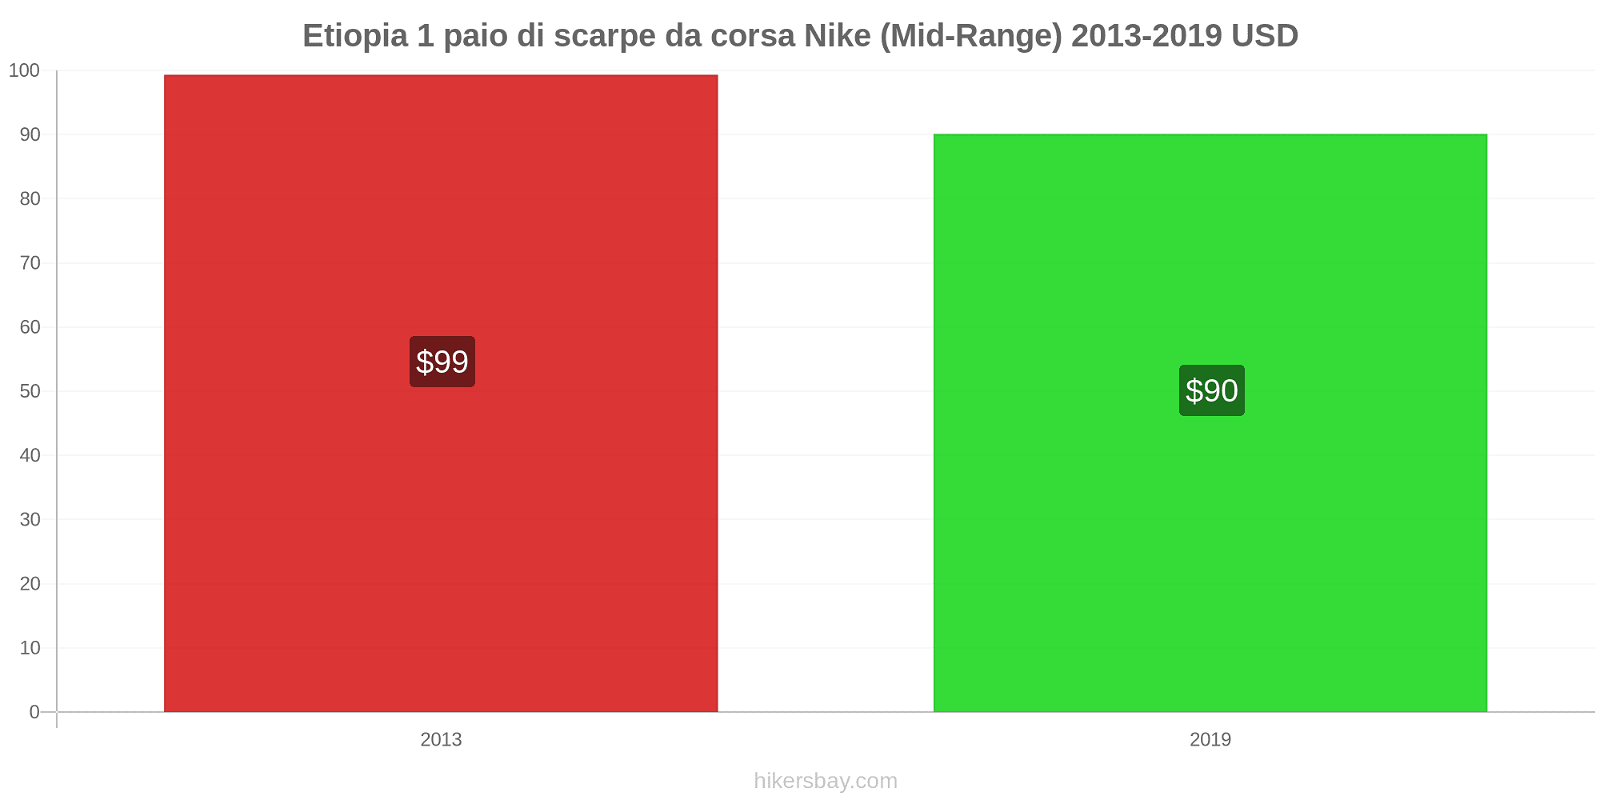 Etiopia variazioni di prezzo 1 paio di scarpe da corsa Nike (simile) hikersbay.com